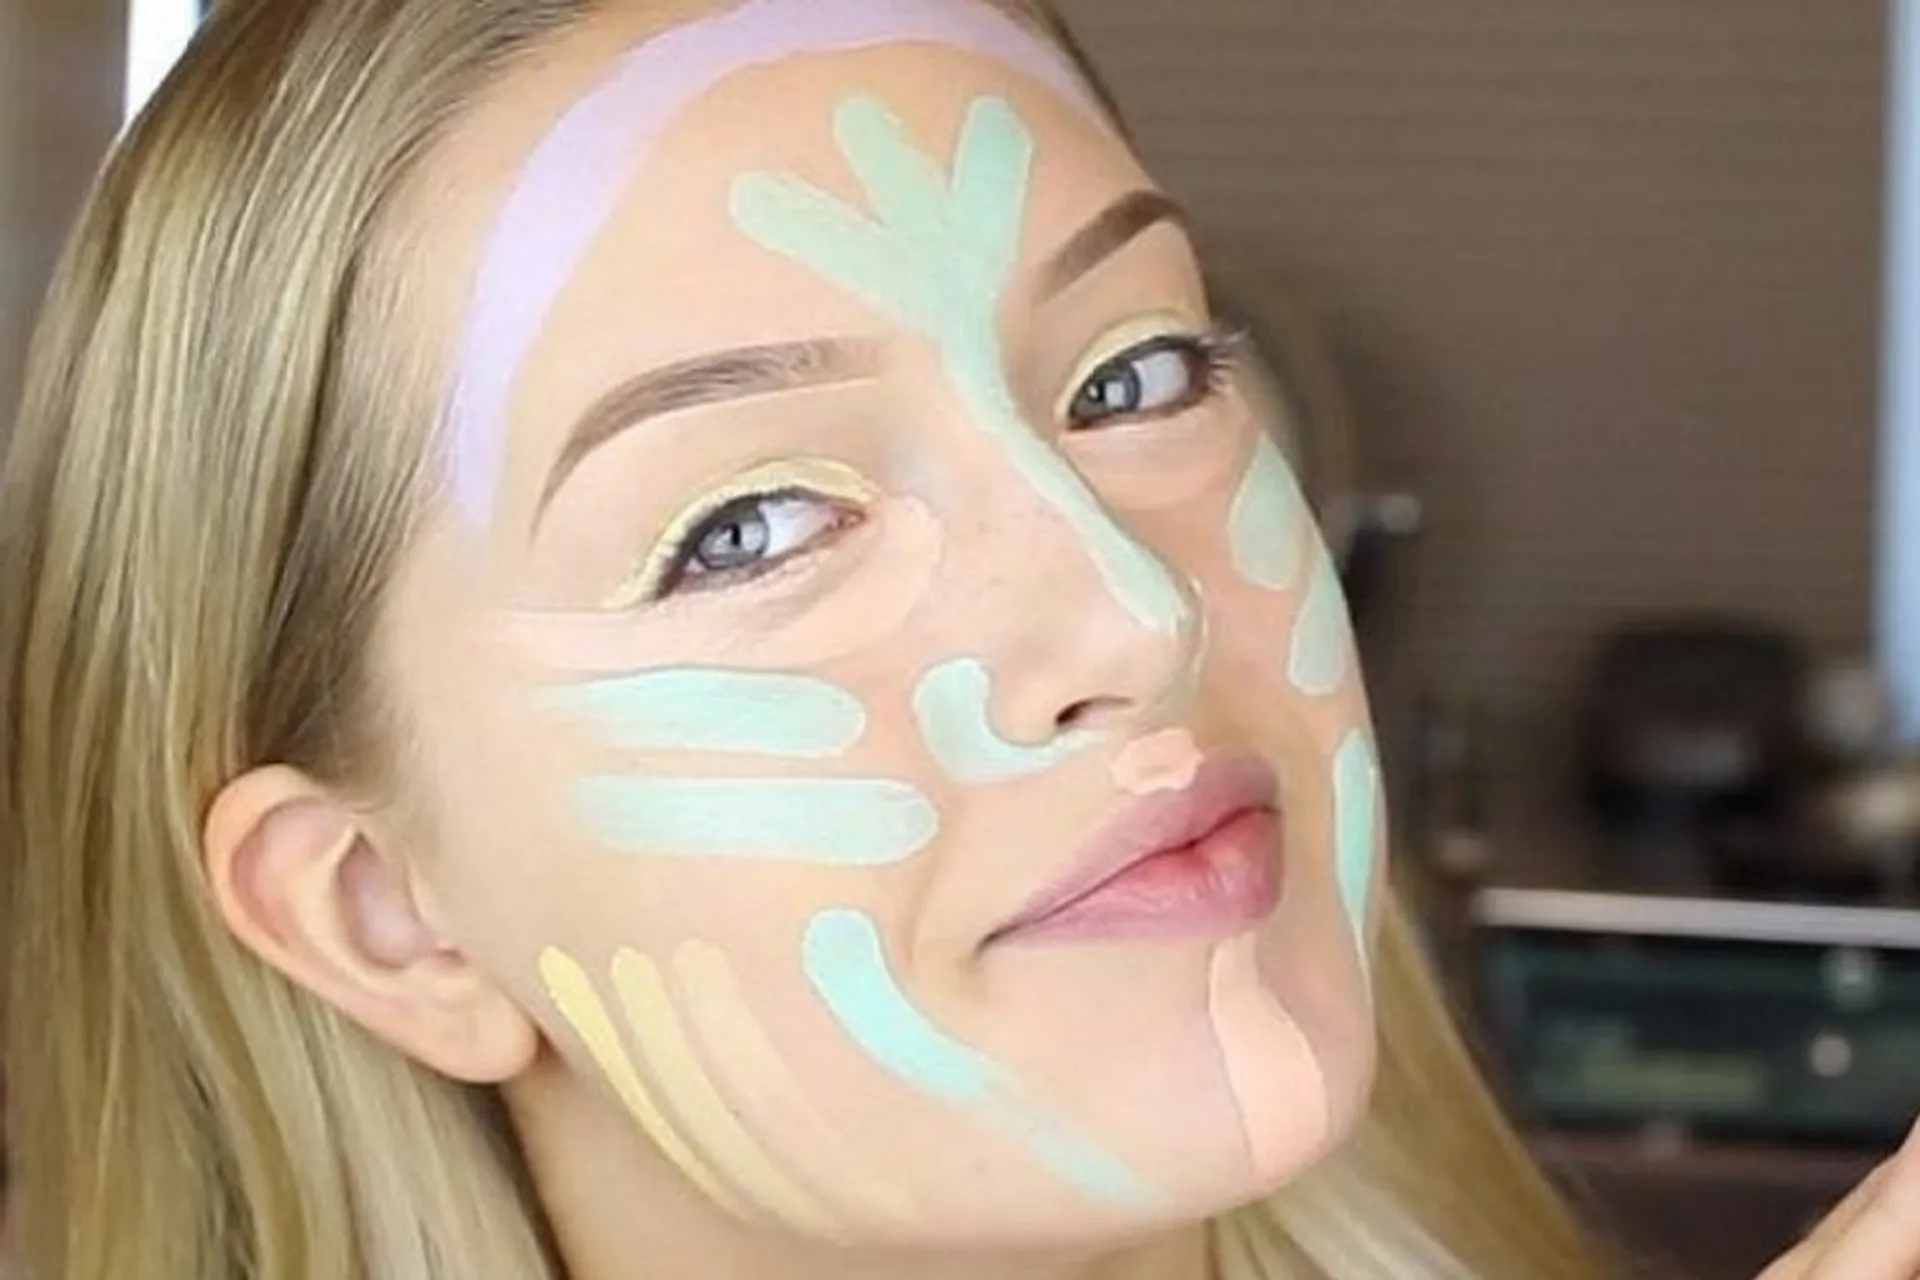 7 Tips Memilih Makeup untuk Kulit Berjerawat